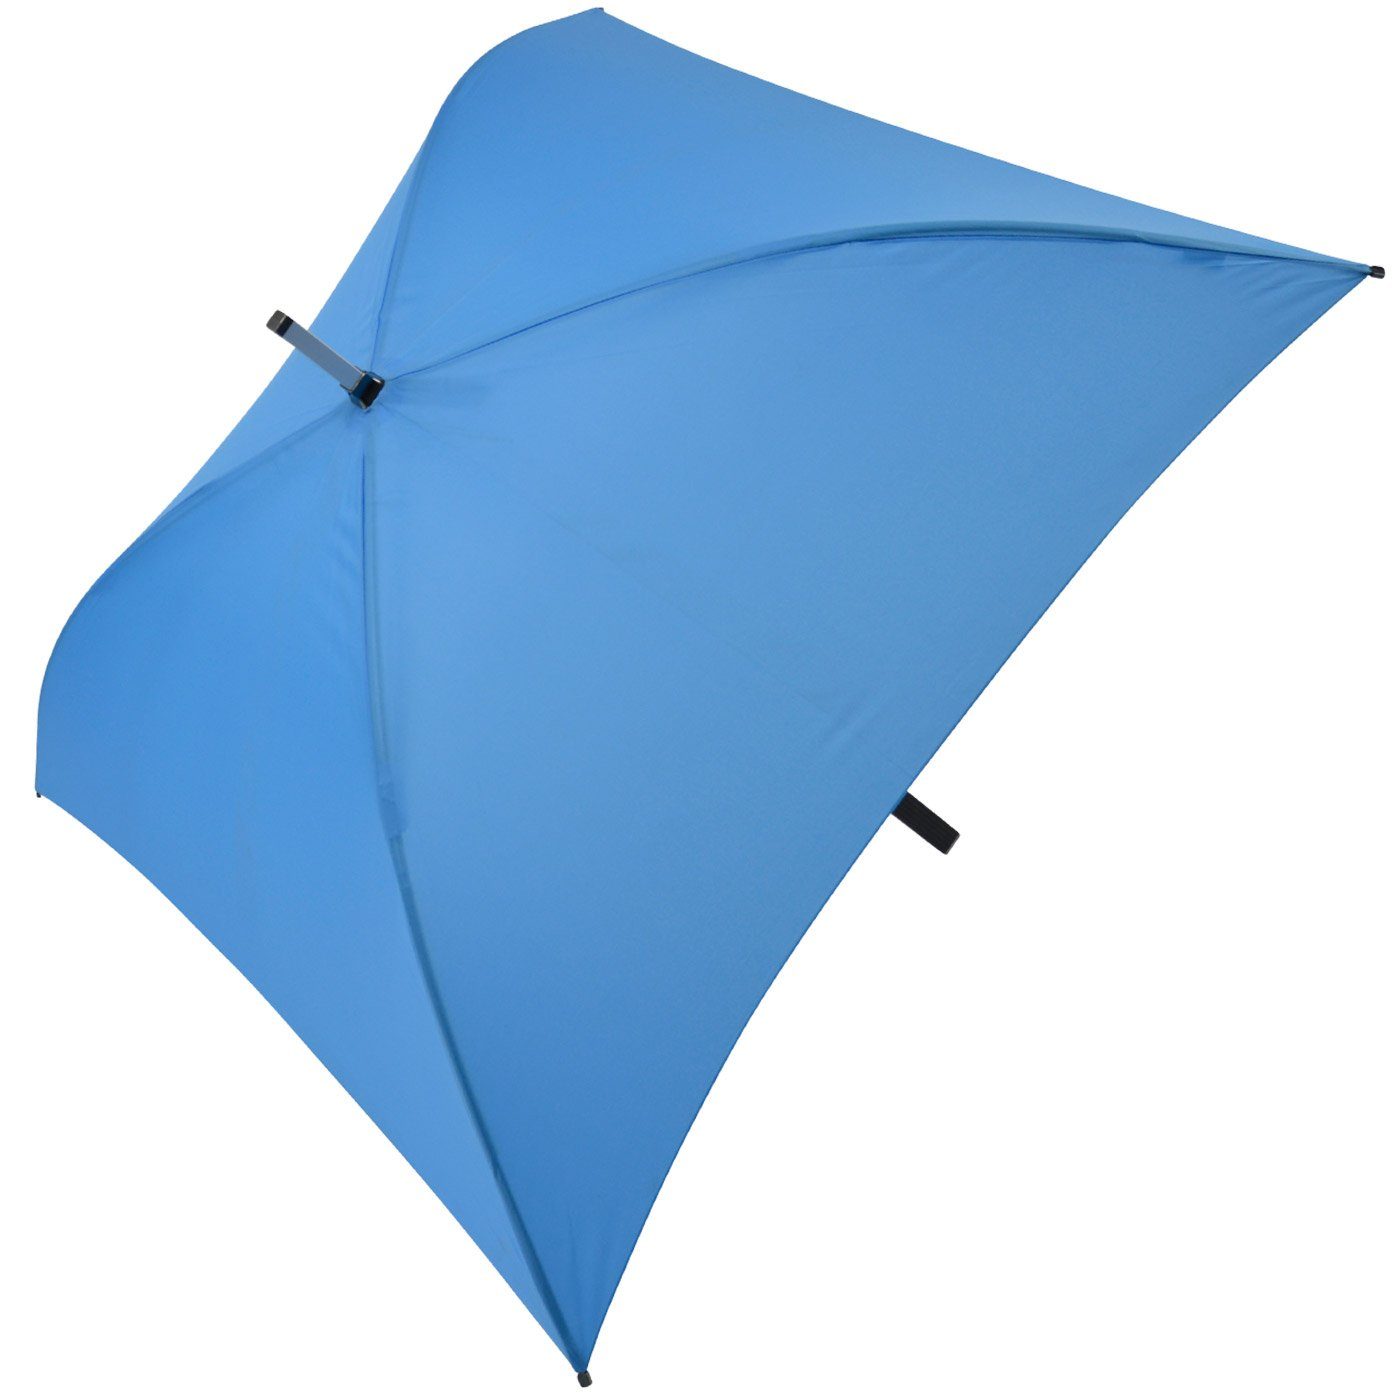 der quadratischer ganz All besondere Langregenschirm Regenschirm, Regenschirm voll hellblau Impliva Square®